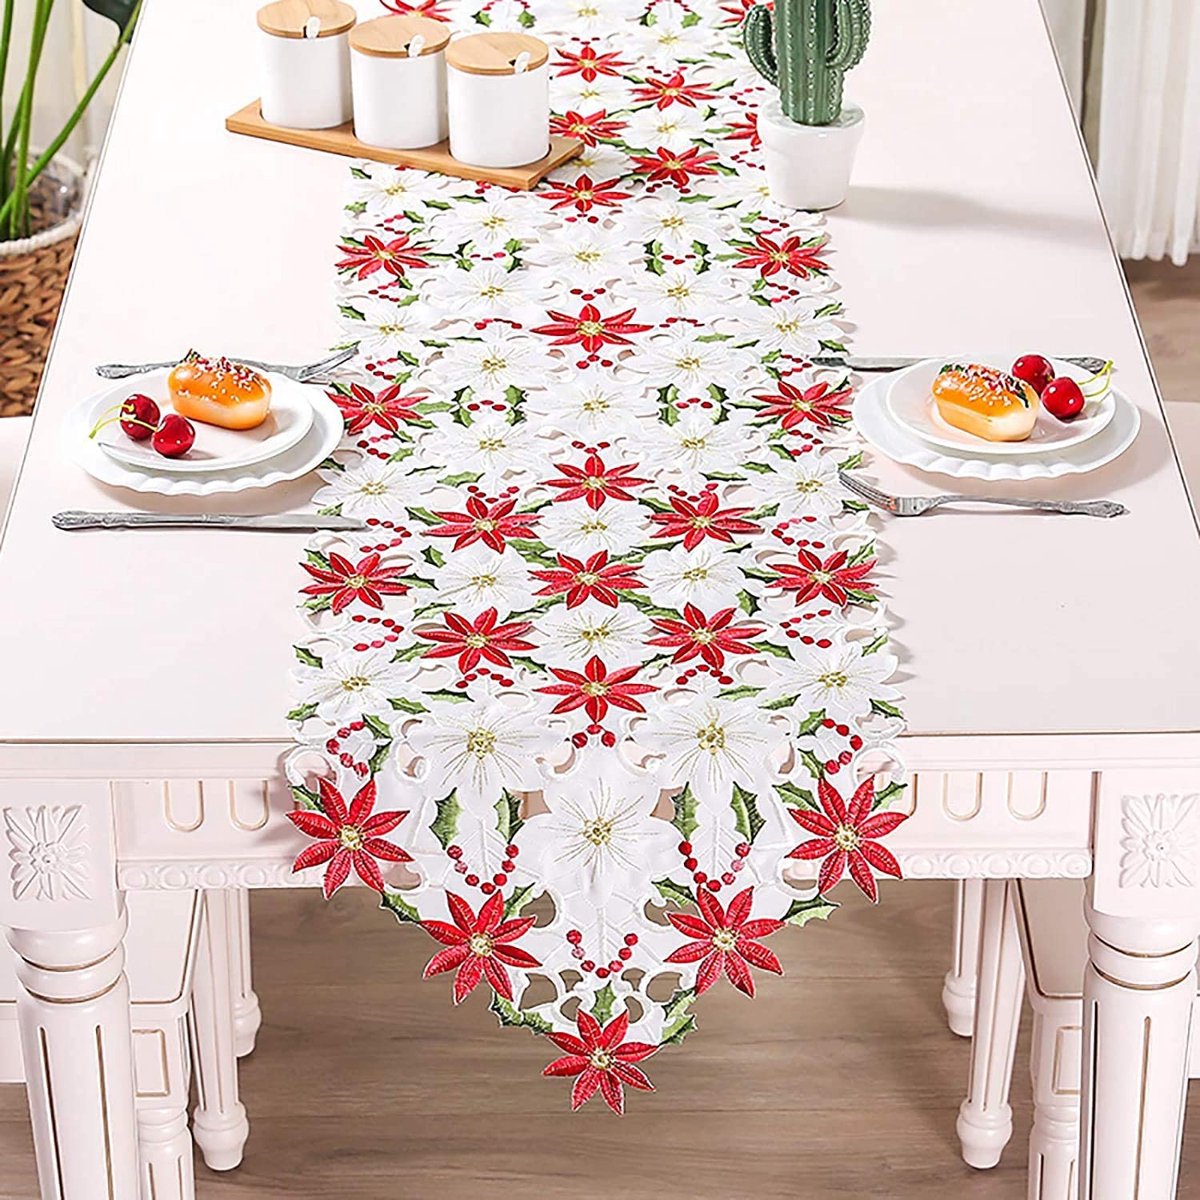 Kerst tafelloper 176 x 38 cm Kerstmis tafelkleed katoen linnenlook kerstster en steekpalmbladeren Kerstmis borduurwerk tafelkleed Kerstmis decoratie